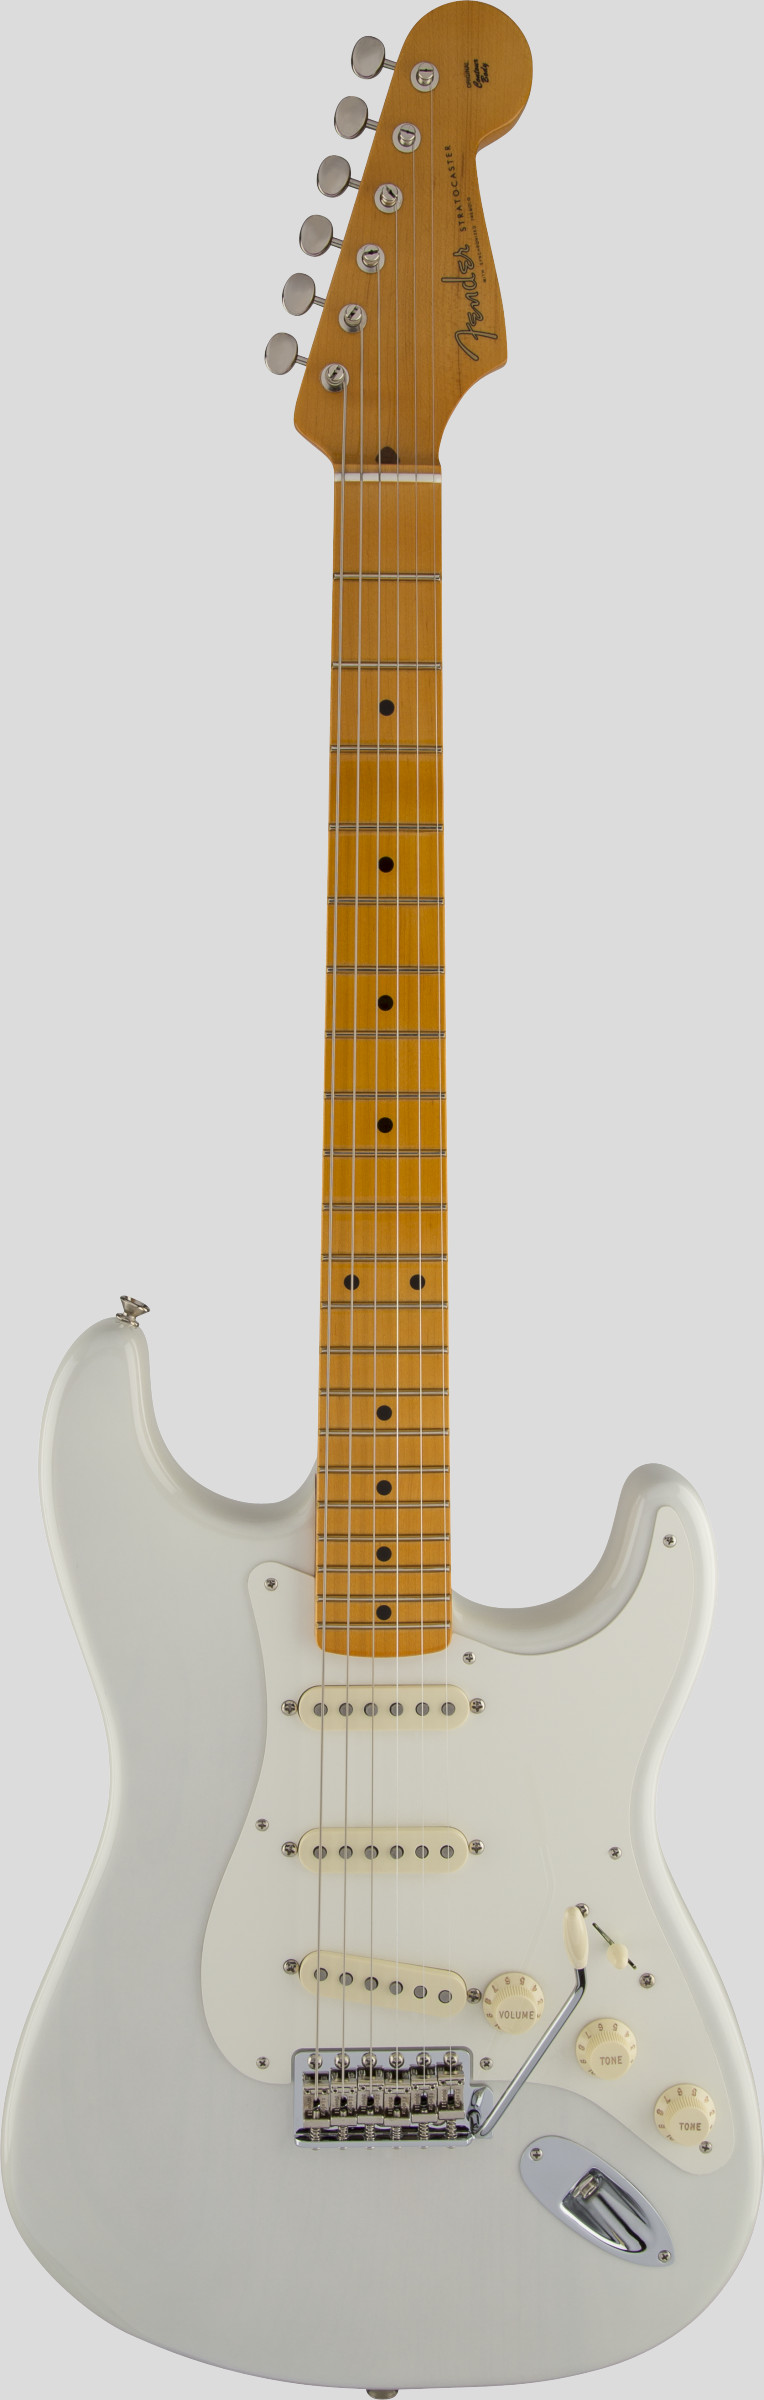 Fender Eric Johnson Stratocaster White Blonde 1